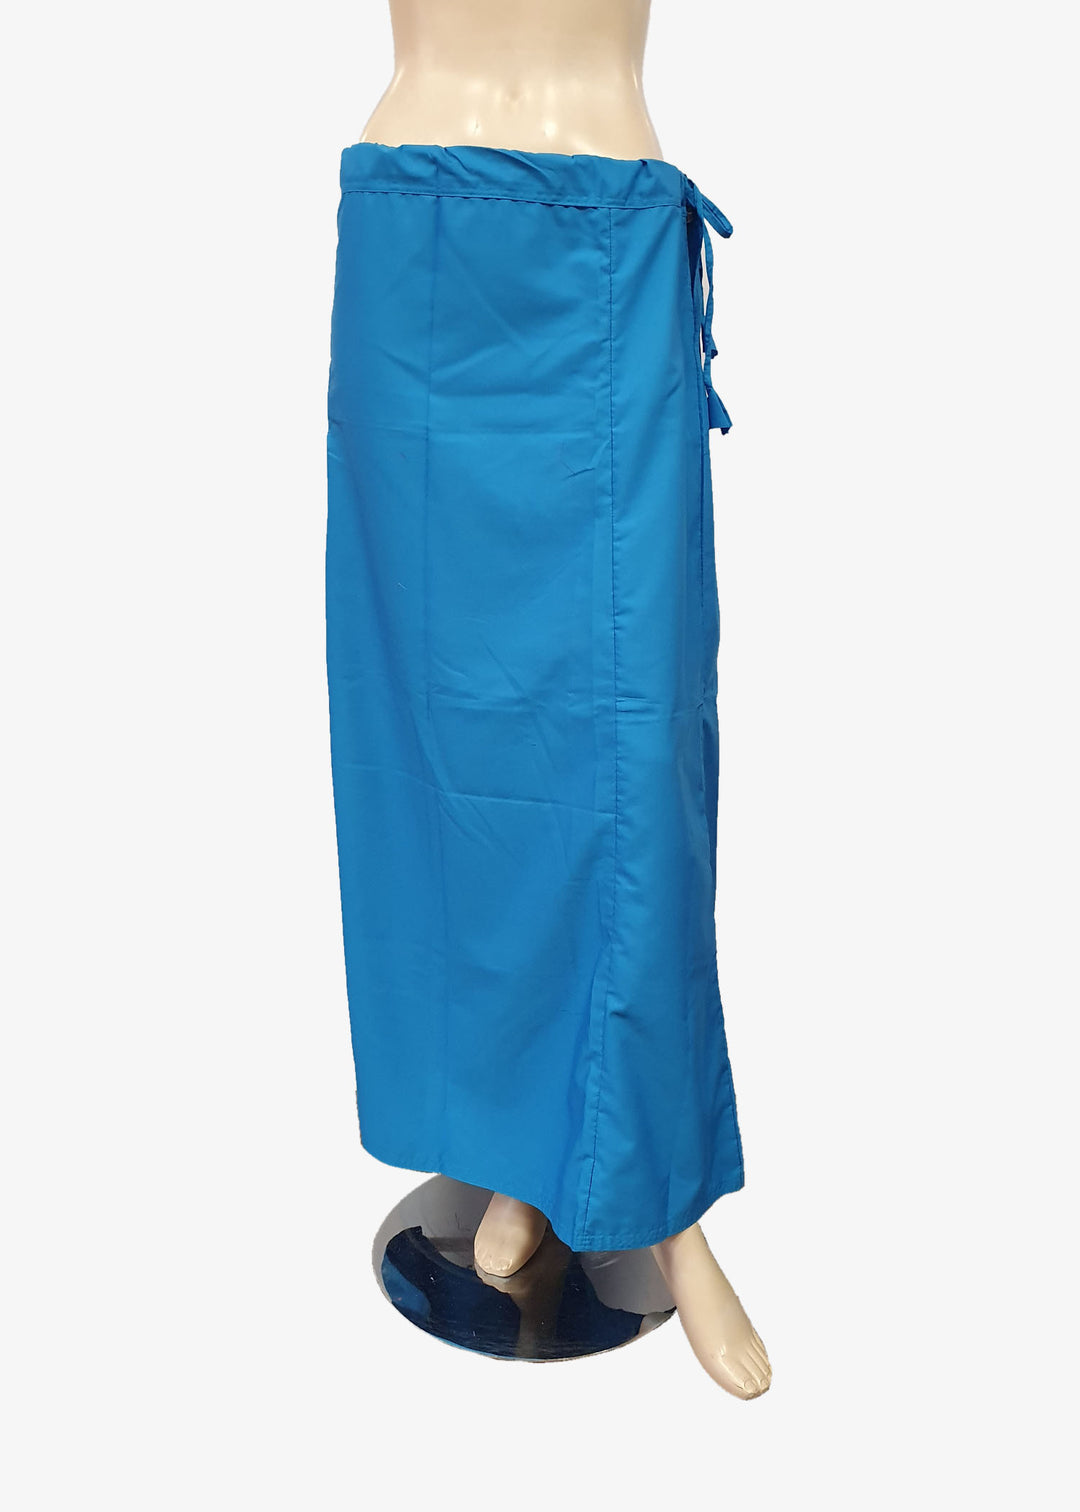 Indigo Blue Cotton Petticoat